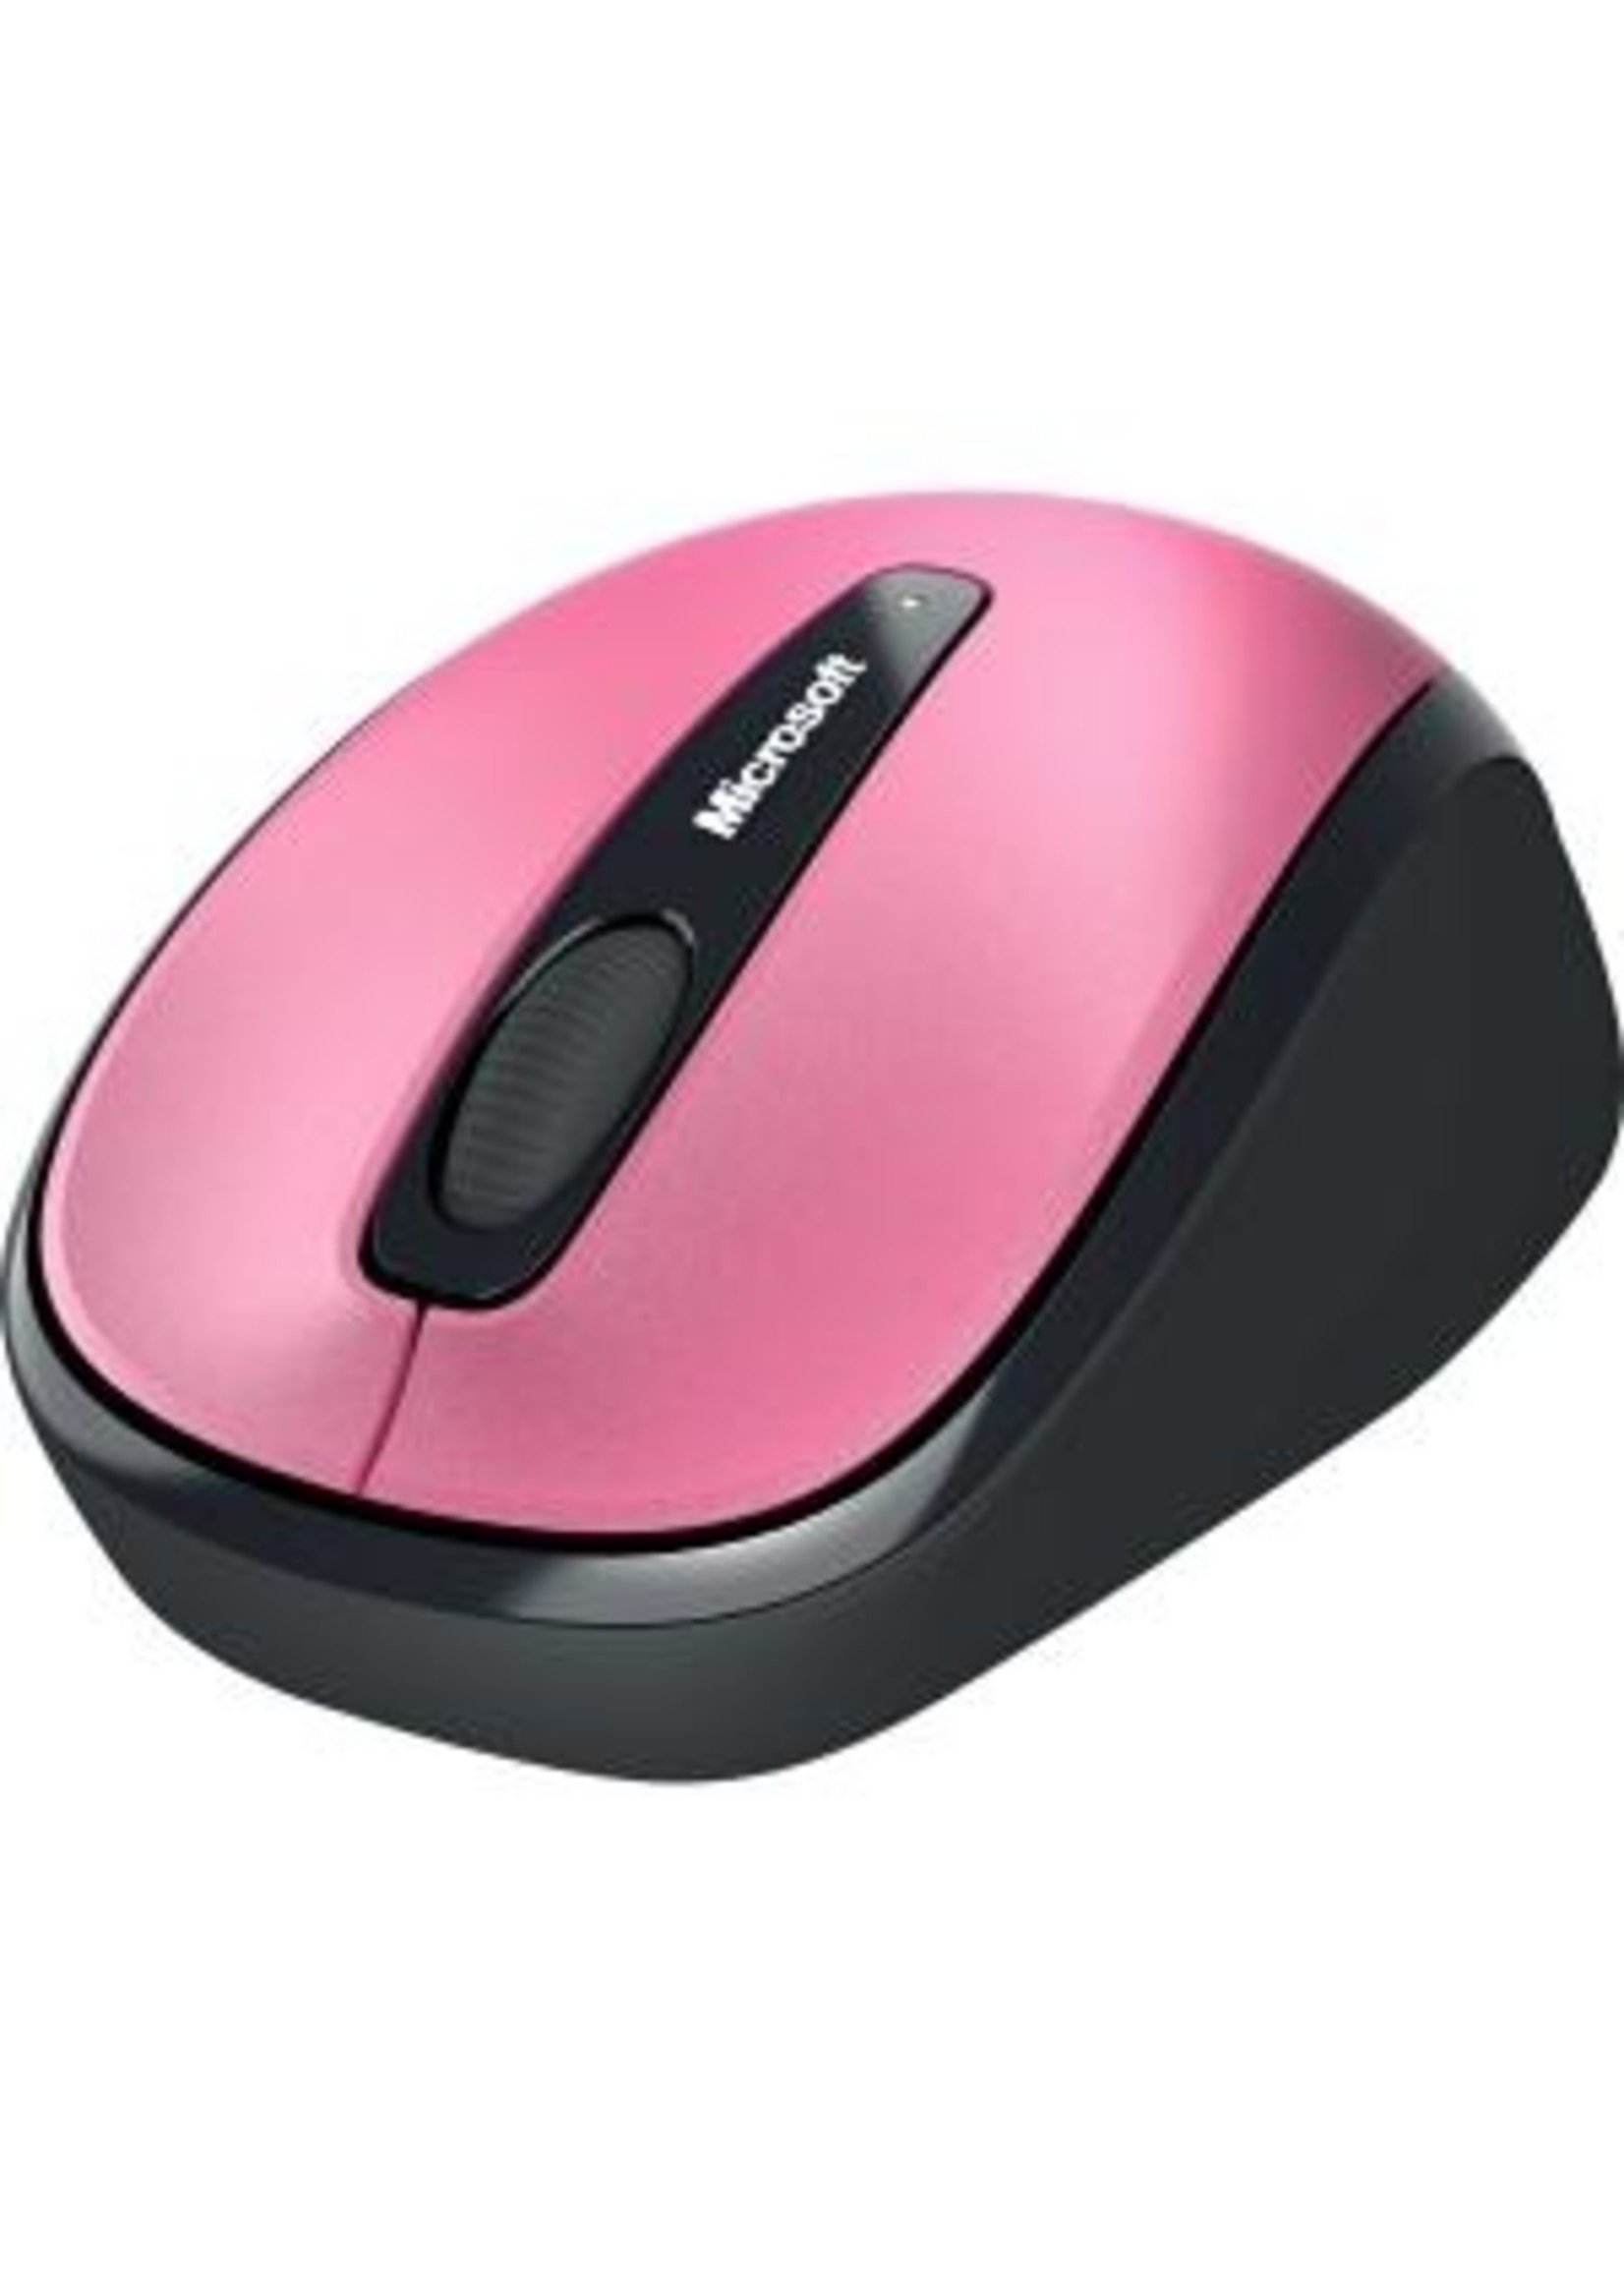 Logitech Microsoft 3500 Wireless Pink